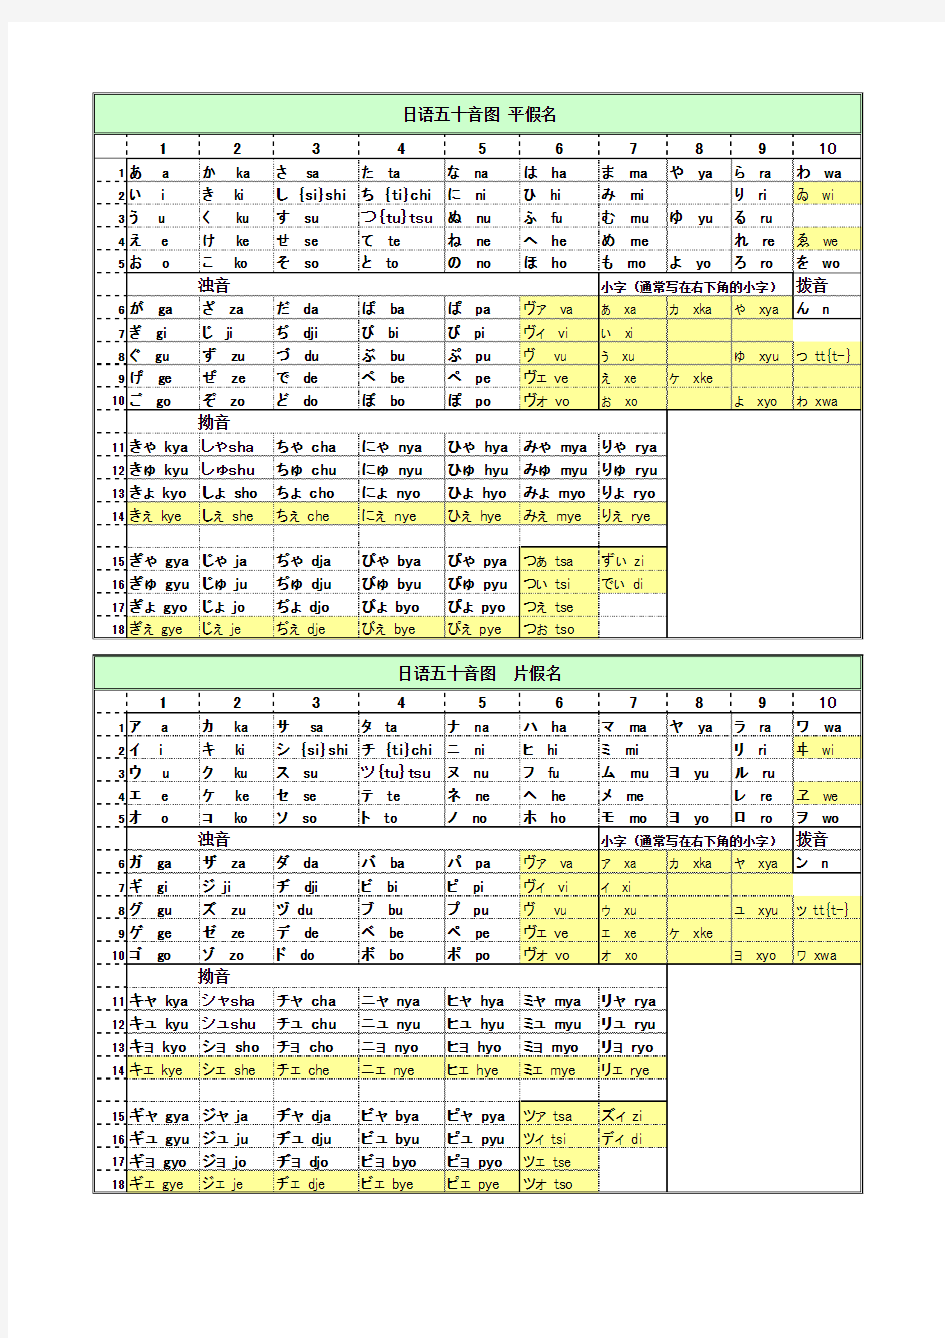 日语五十音图(平假名_片假名_罗马字_含最新发音)_打印版_Excel表格